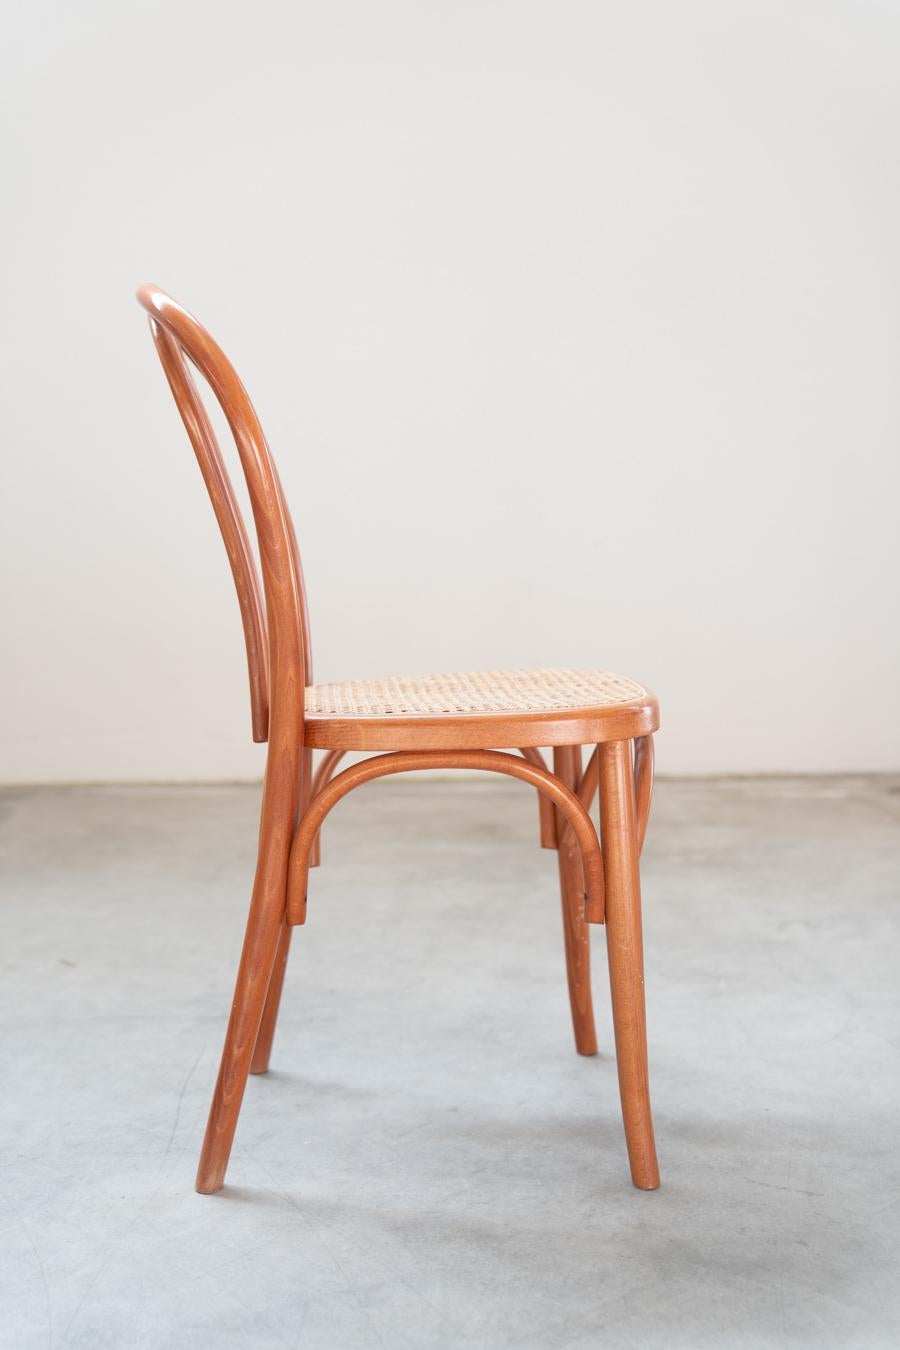 Sedie stile Thonet, in legno di faggio curvato e seduta in paglia, nr 34 totale For Sale 5